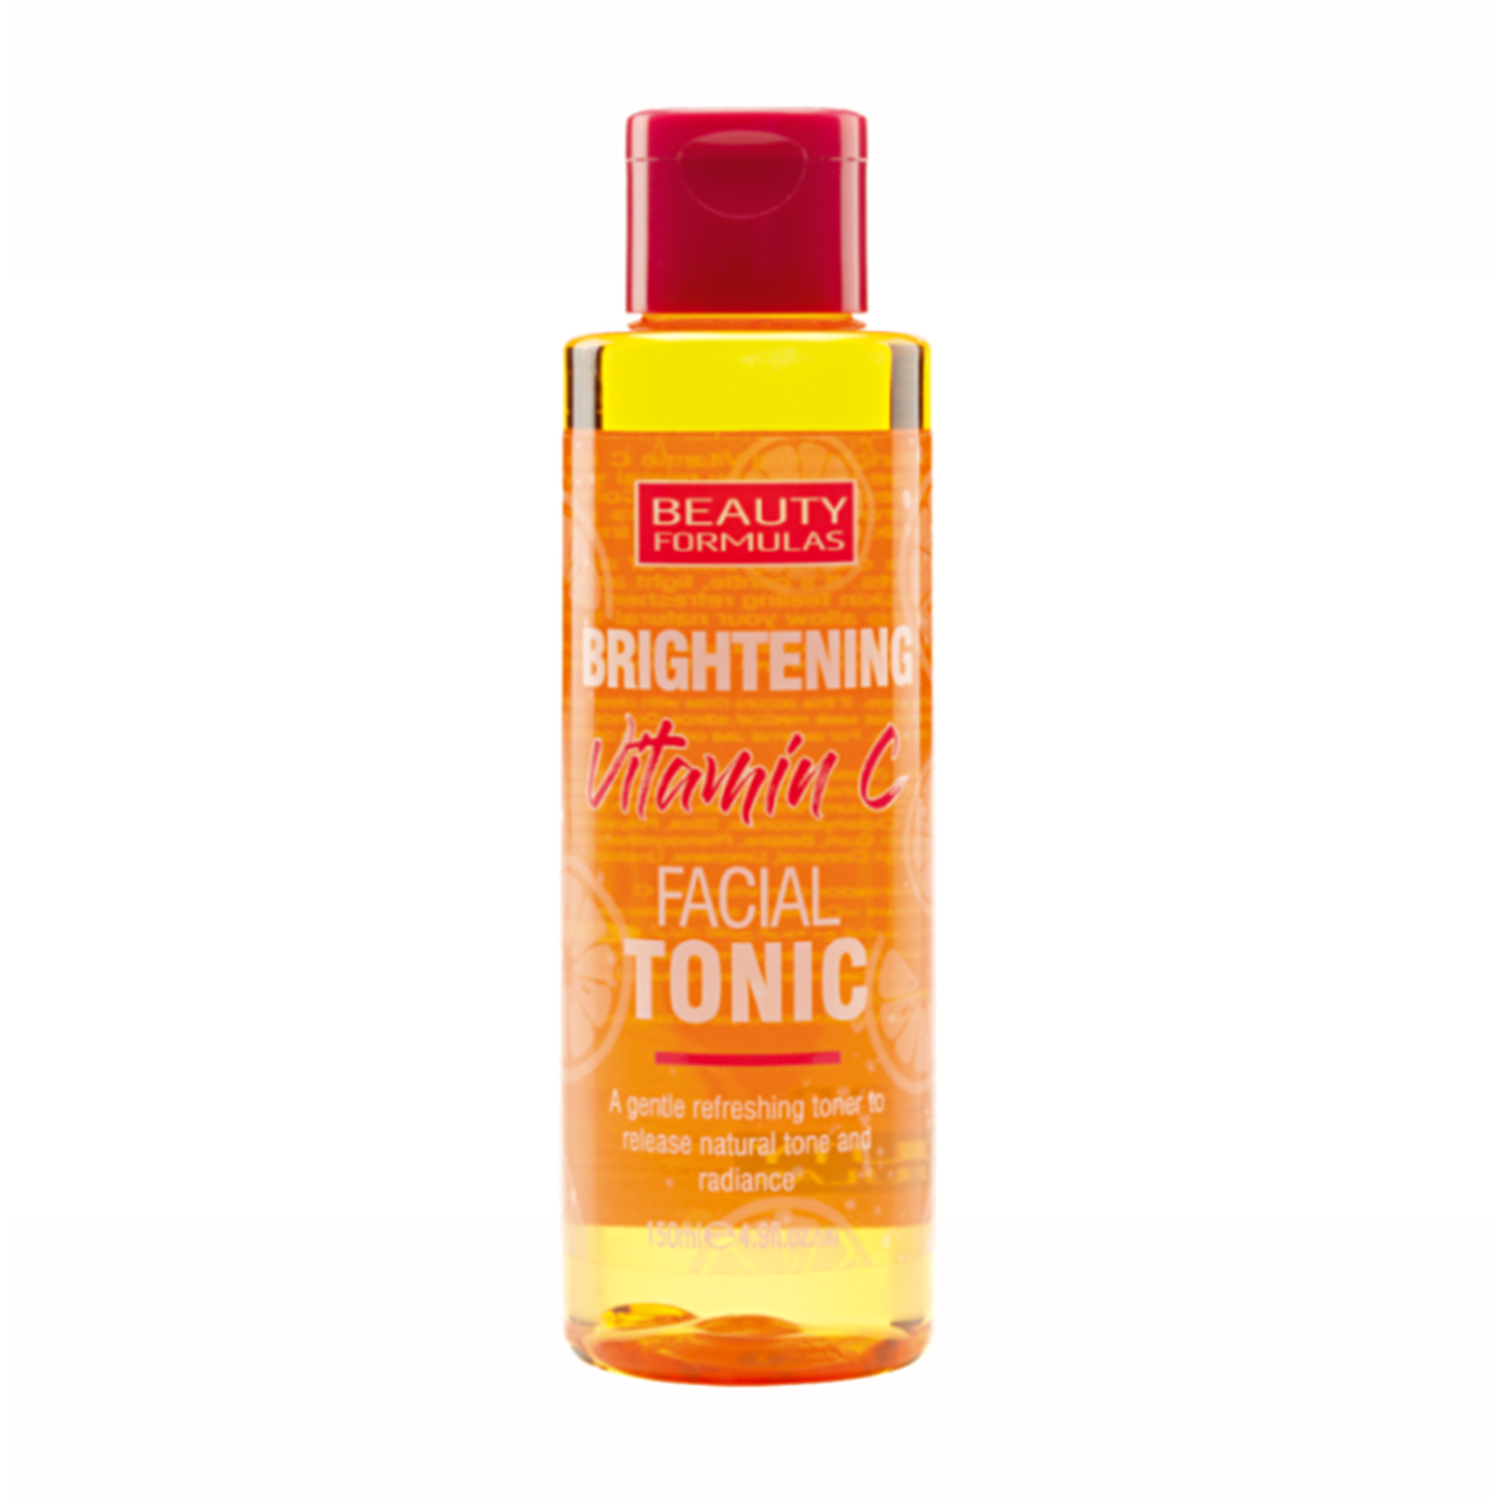 Brightening Vitamin C Facial Tonic - Orange Image